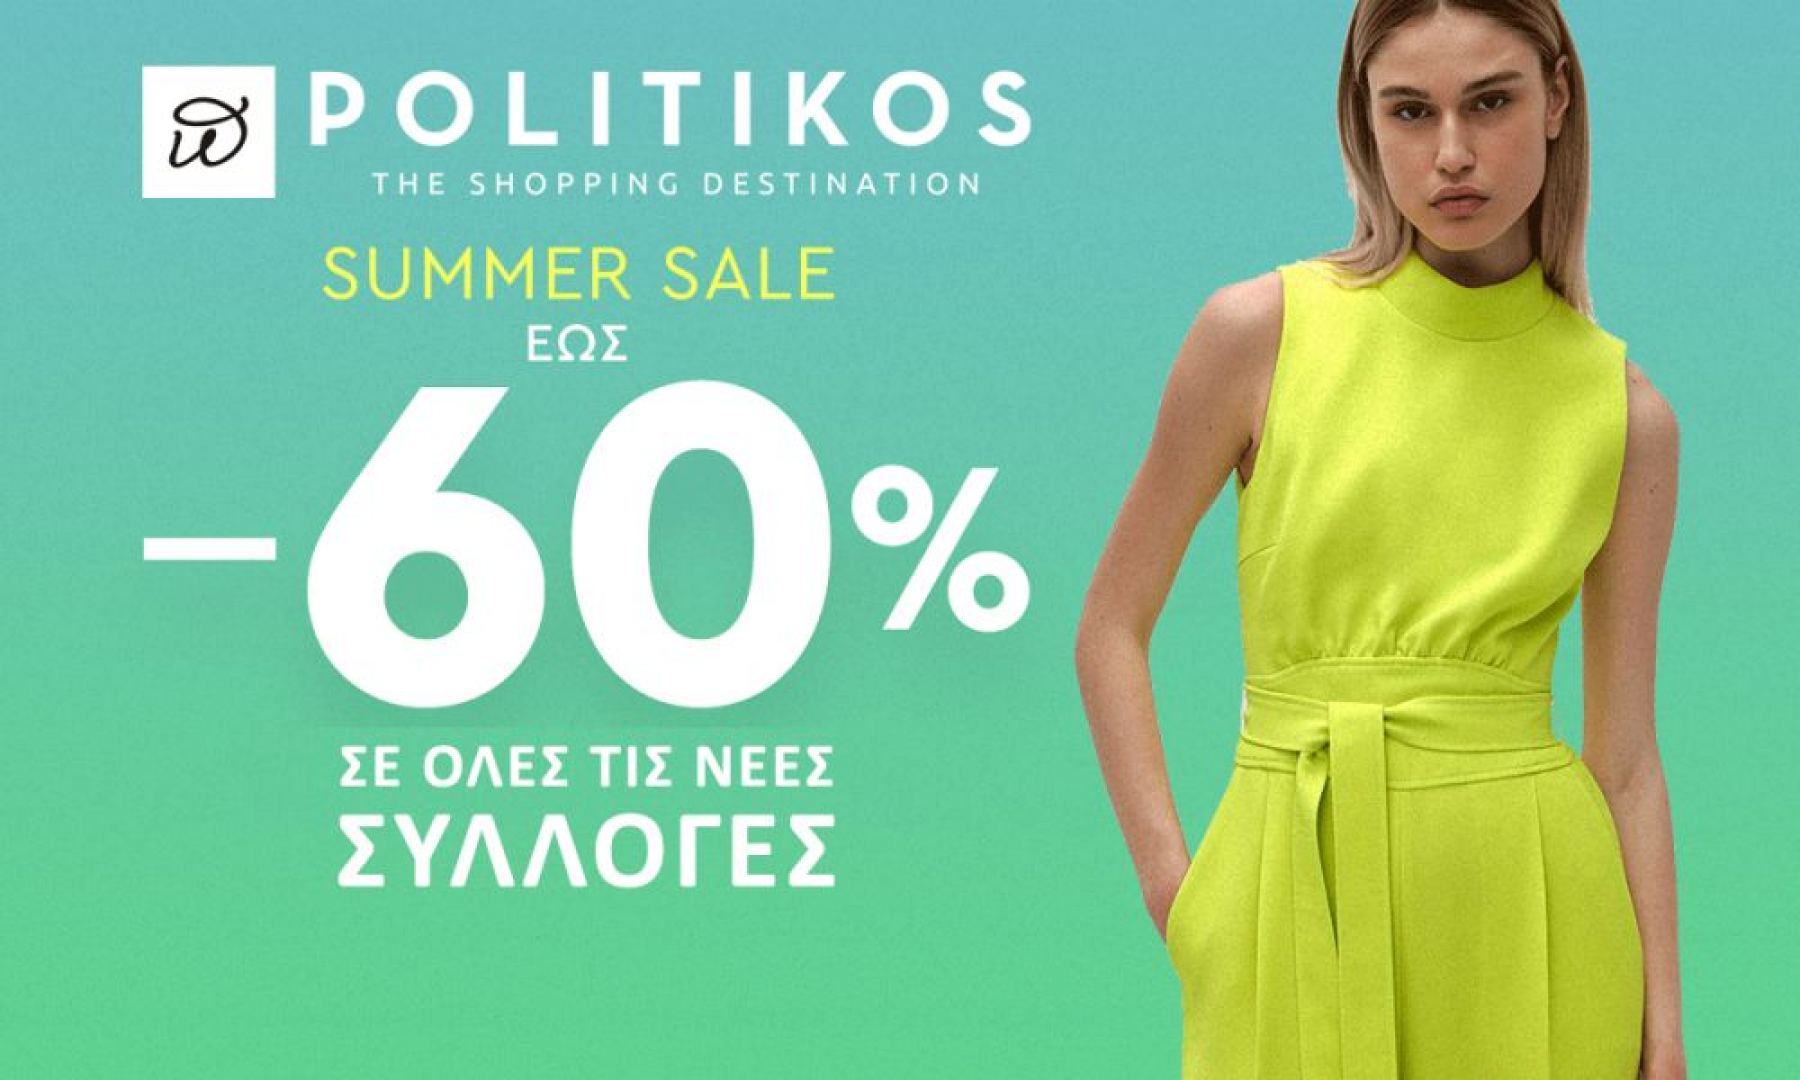 Πολυκατάστημα “POLITIKOS”: Ανοιχτά την Κυριακή με Εκπτώσεις έως -60%!